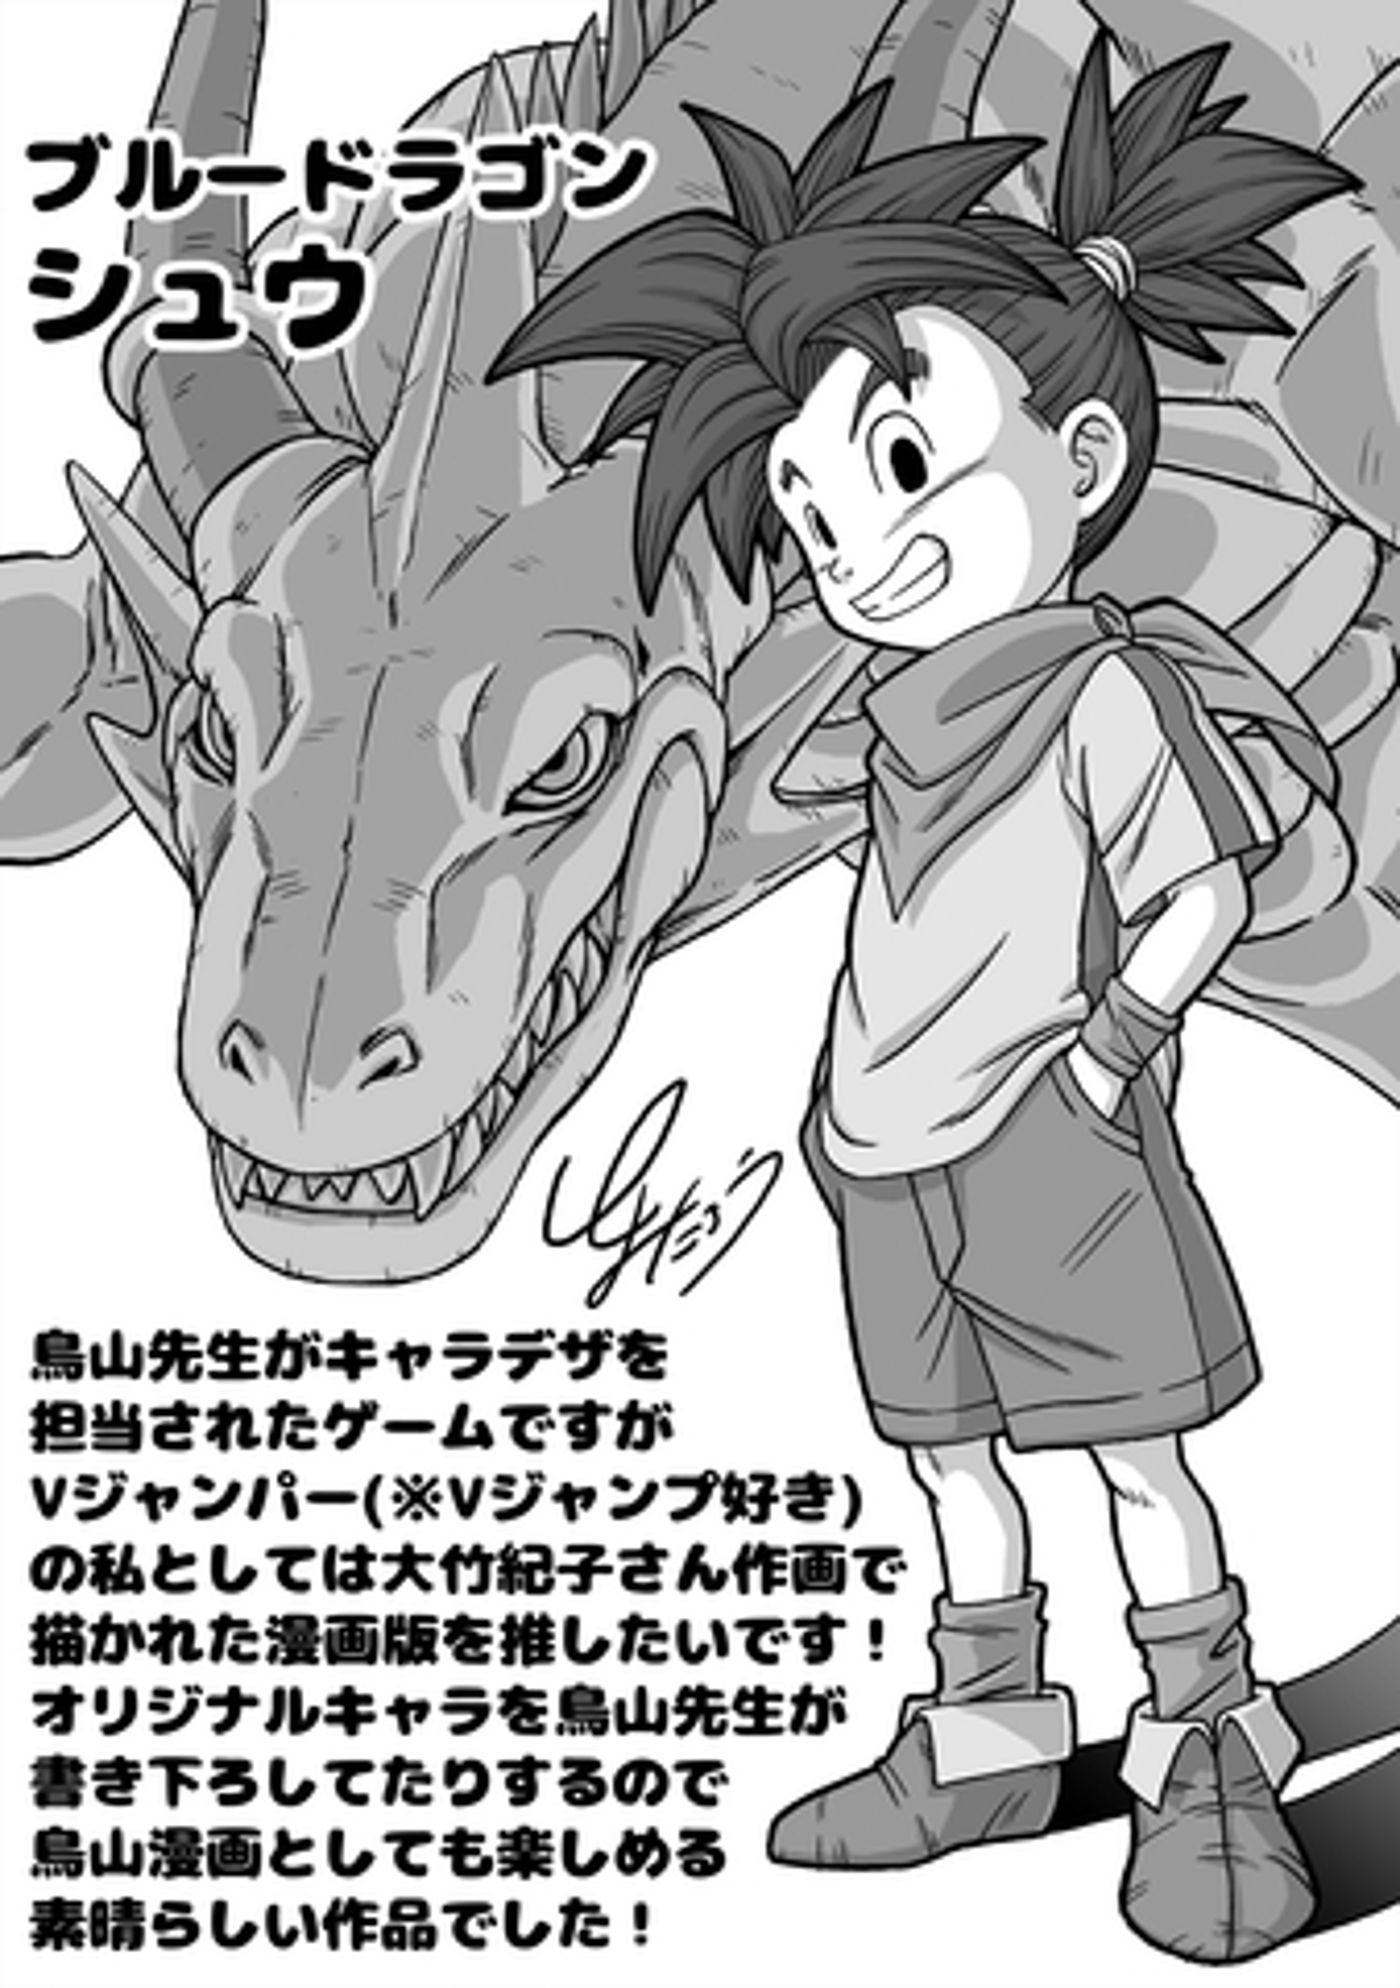 Esboço de Toyotaro do Shu do Blue Dragon para Dragon Ball Official